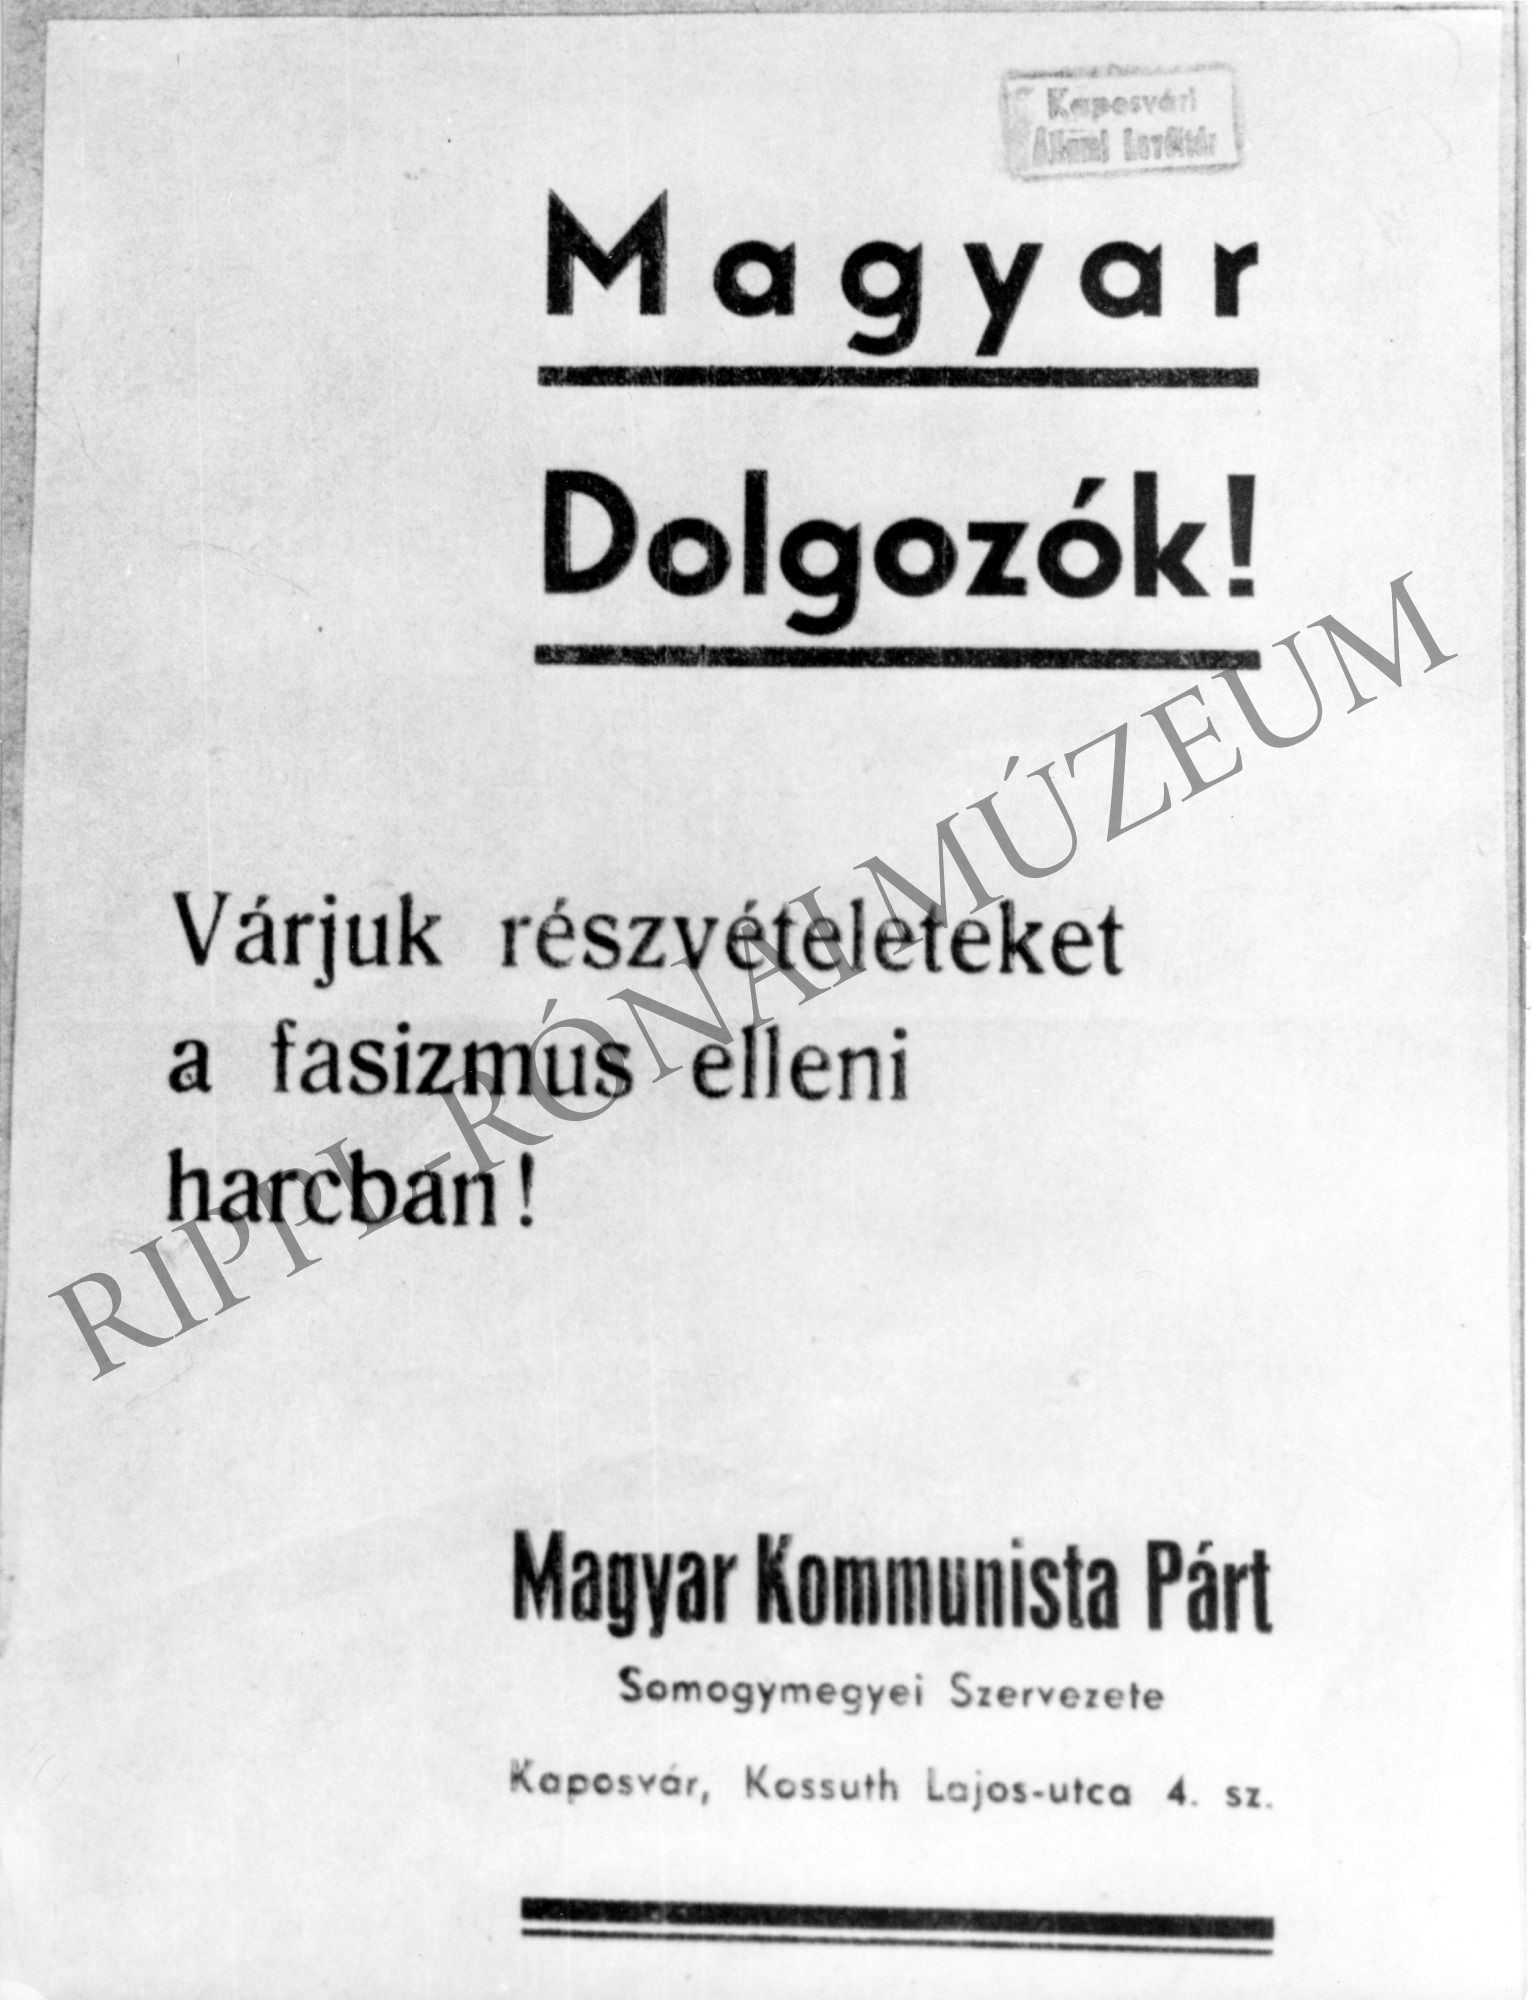 A fasizmus elleni harcra felhívó plakát - a Magyar Kommunista Párt somogyi szervezete (Rippl-Rónai Múzeum CC BY-NC-SA)